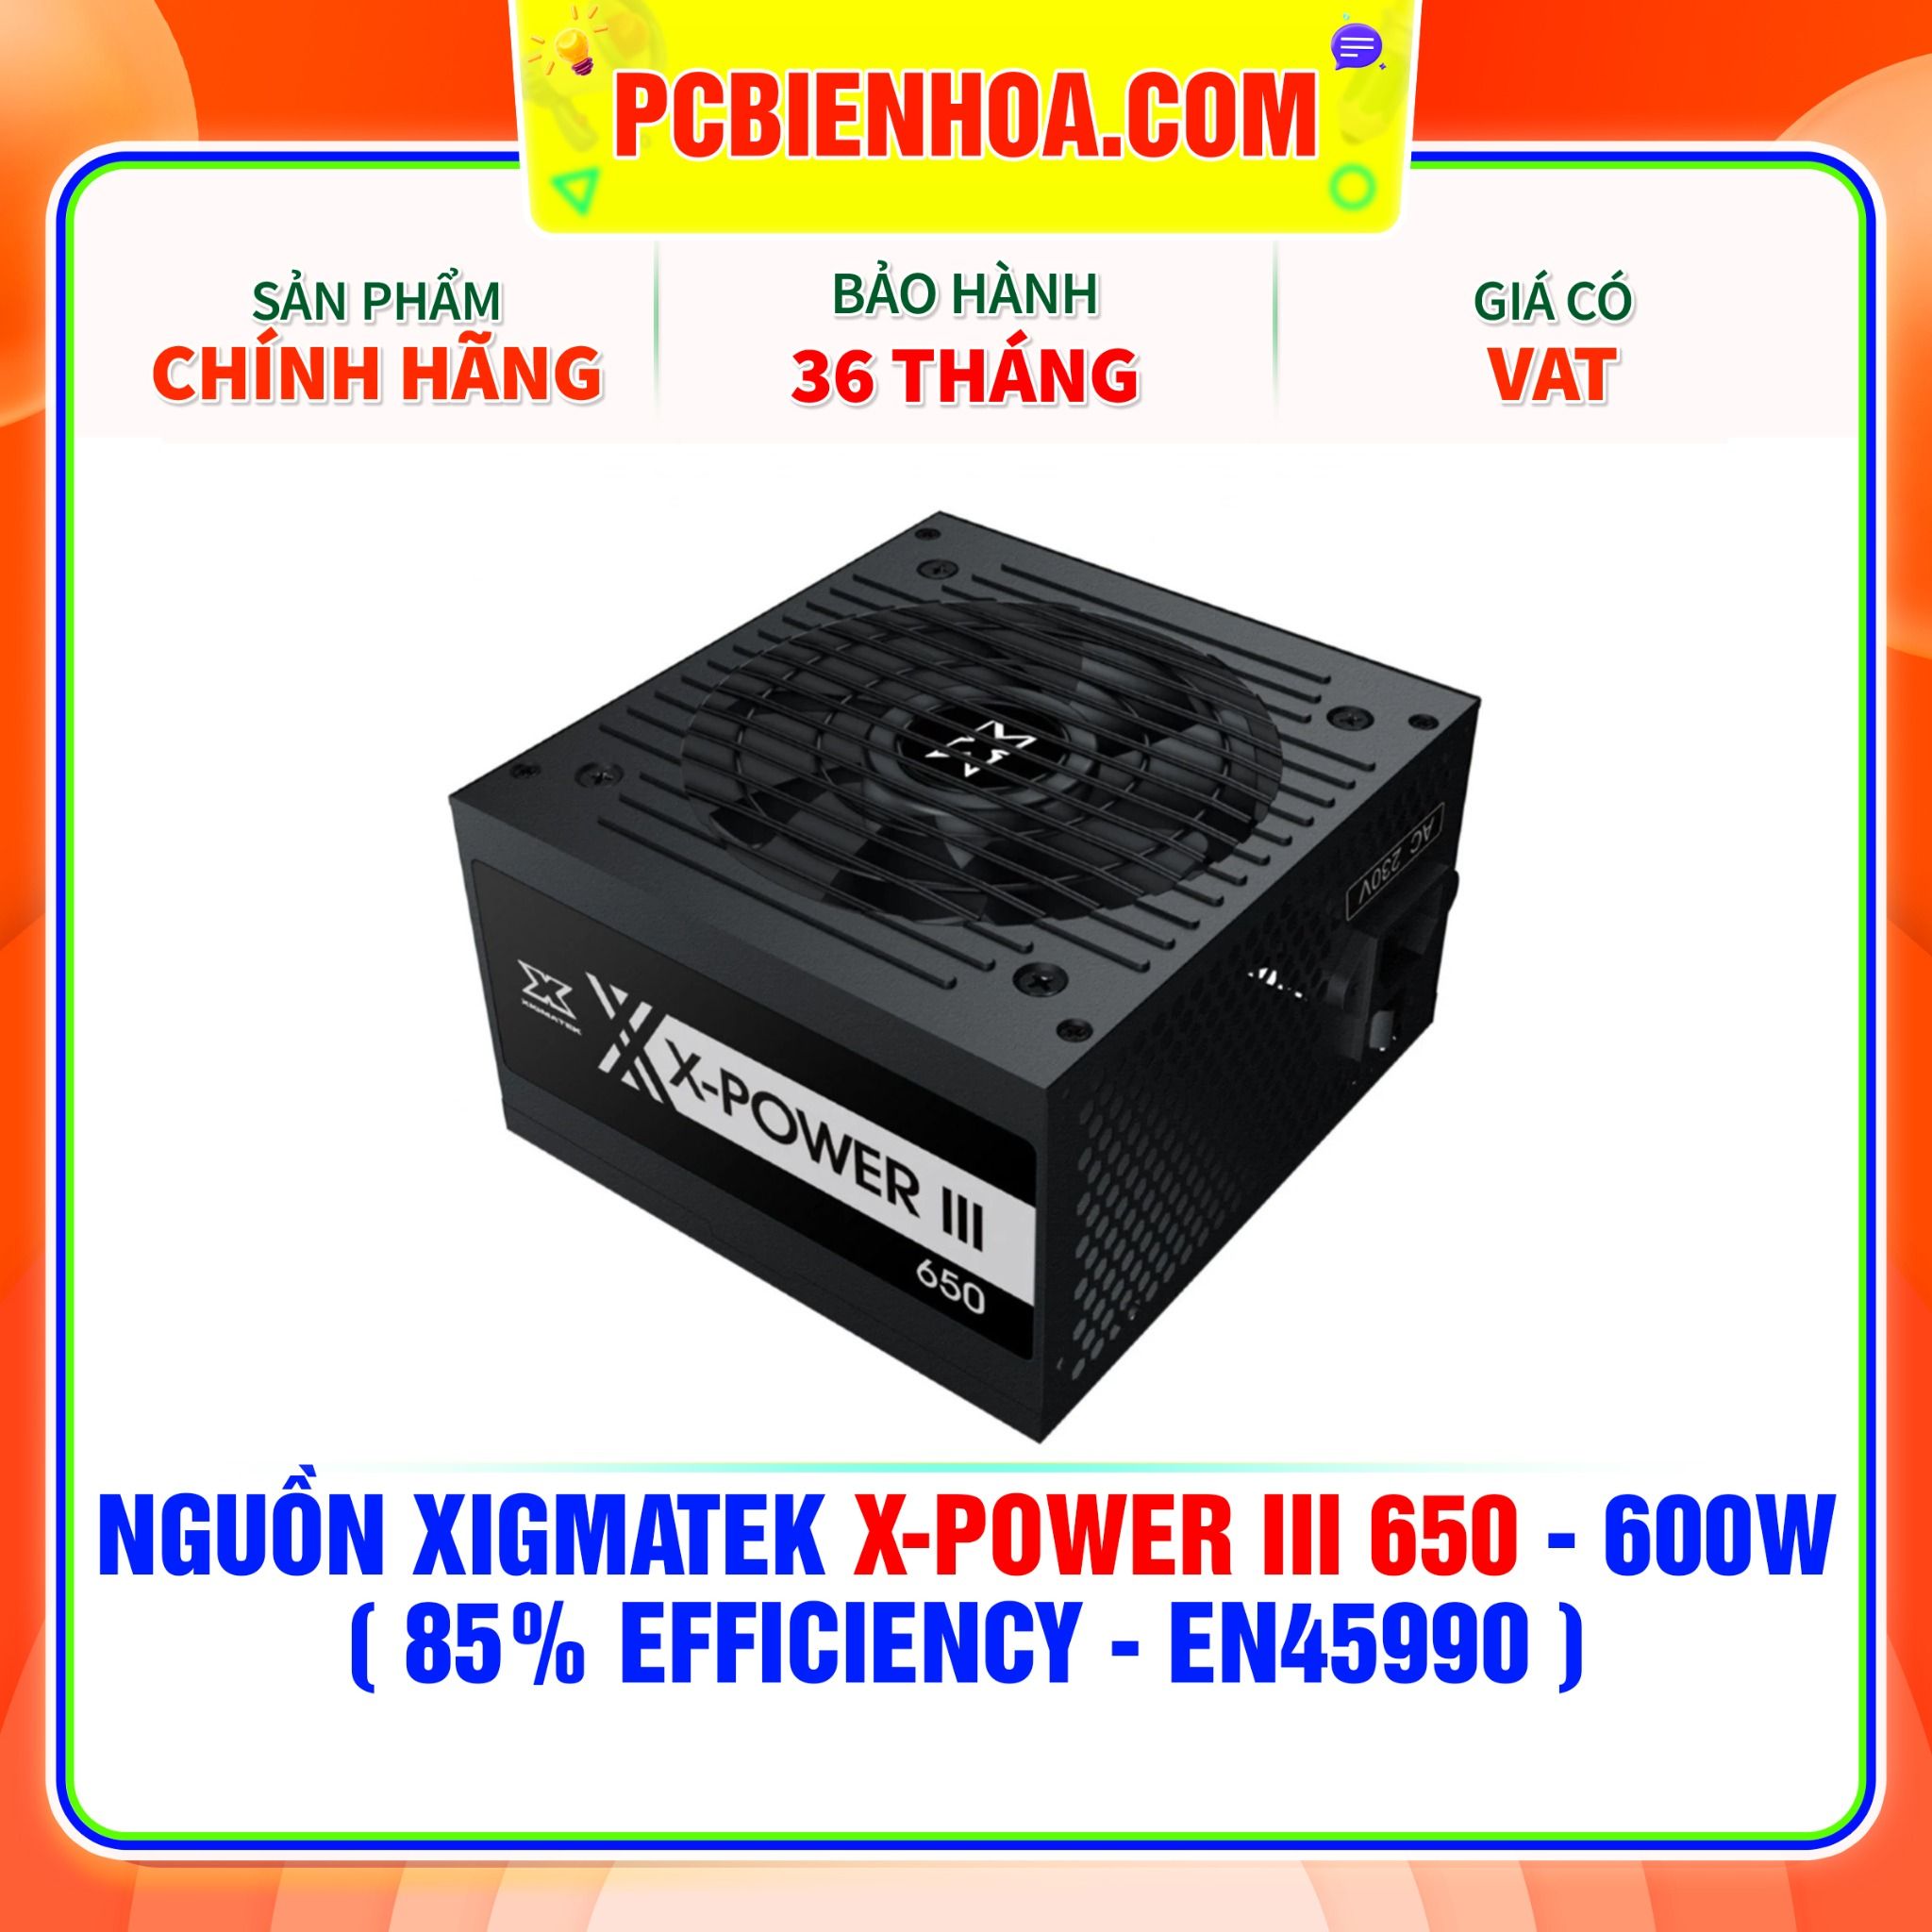  NGUỒN XIGMATEK X-POWER III 650 - 600W ( 85% EFFICIENCY - EN45990 ) 